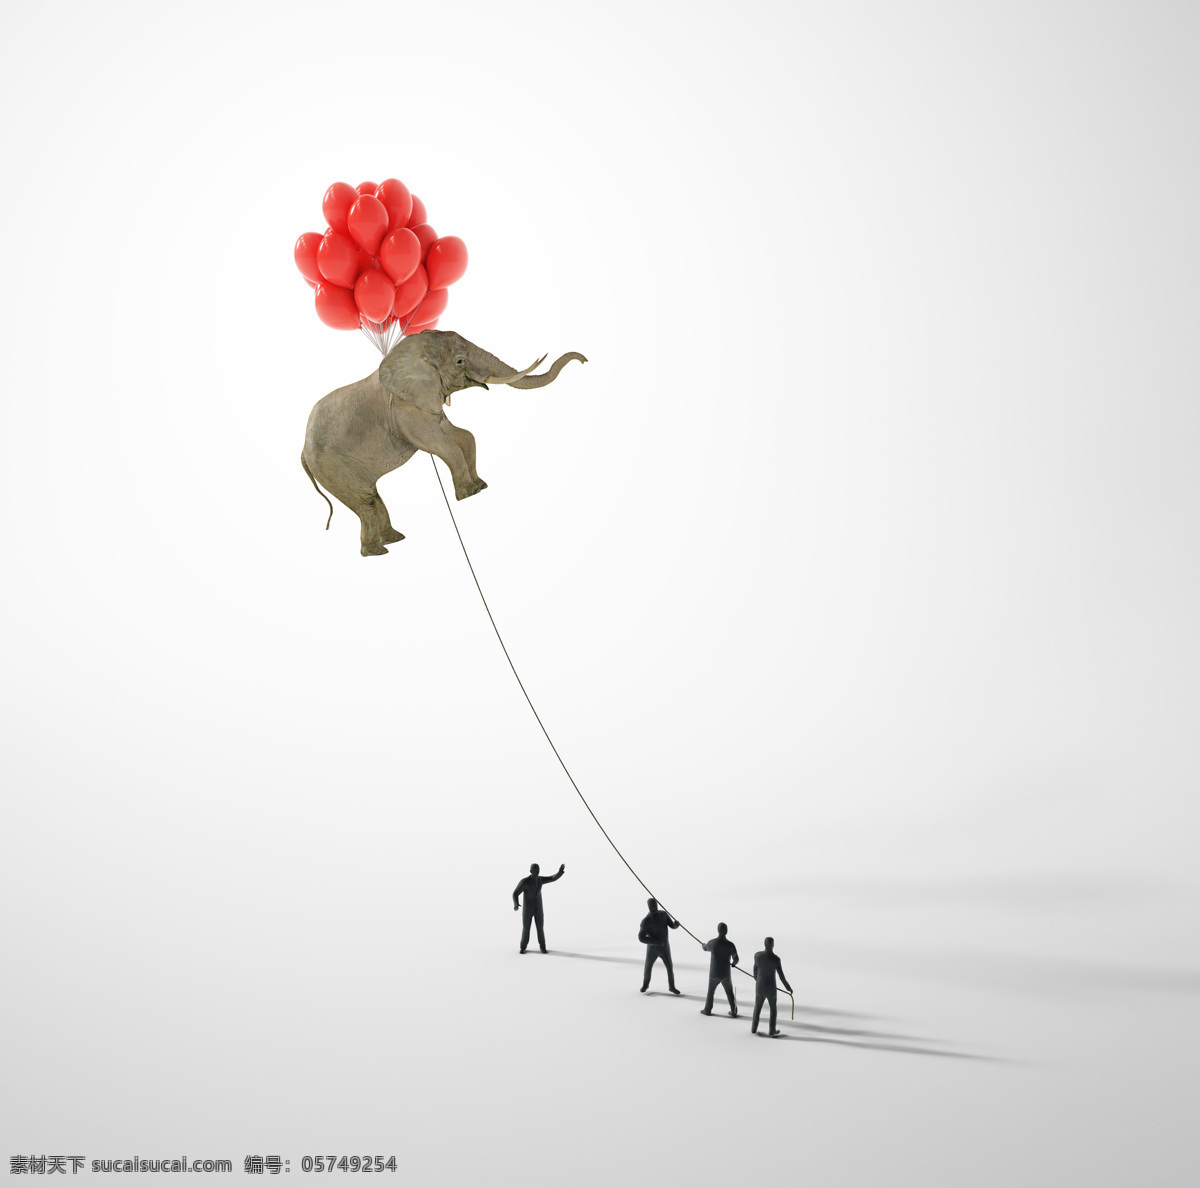 商务创意 大象 气球 放风筝 商务人物 领导人 领导者 领航者 领导 领航 商务 金融 人物 人士 职业人物 人物图库